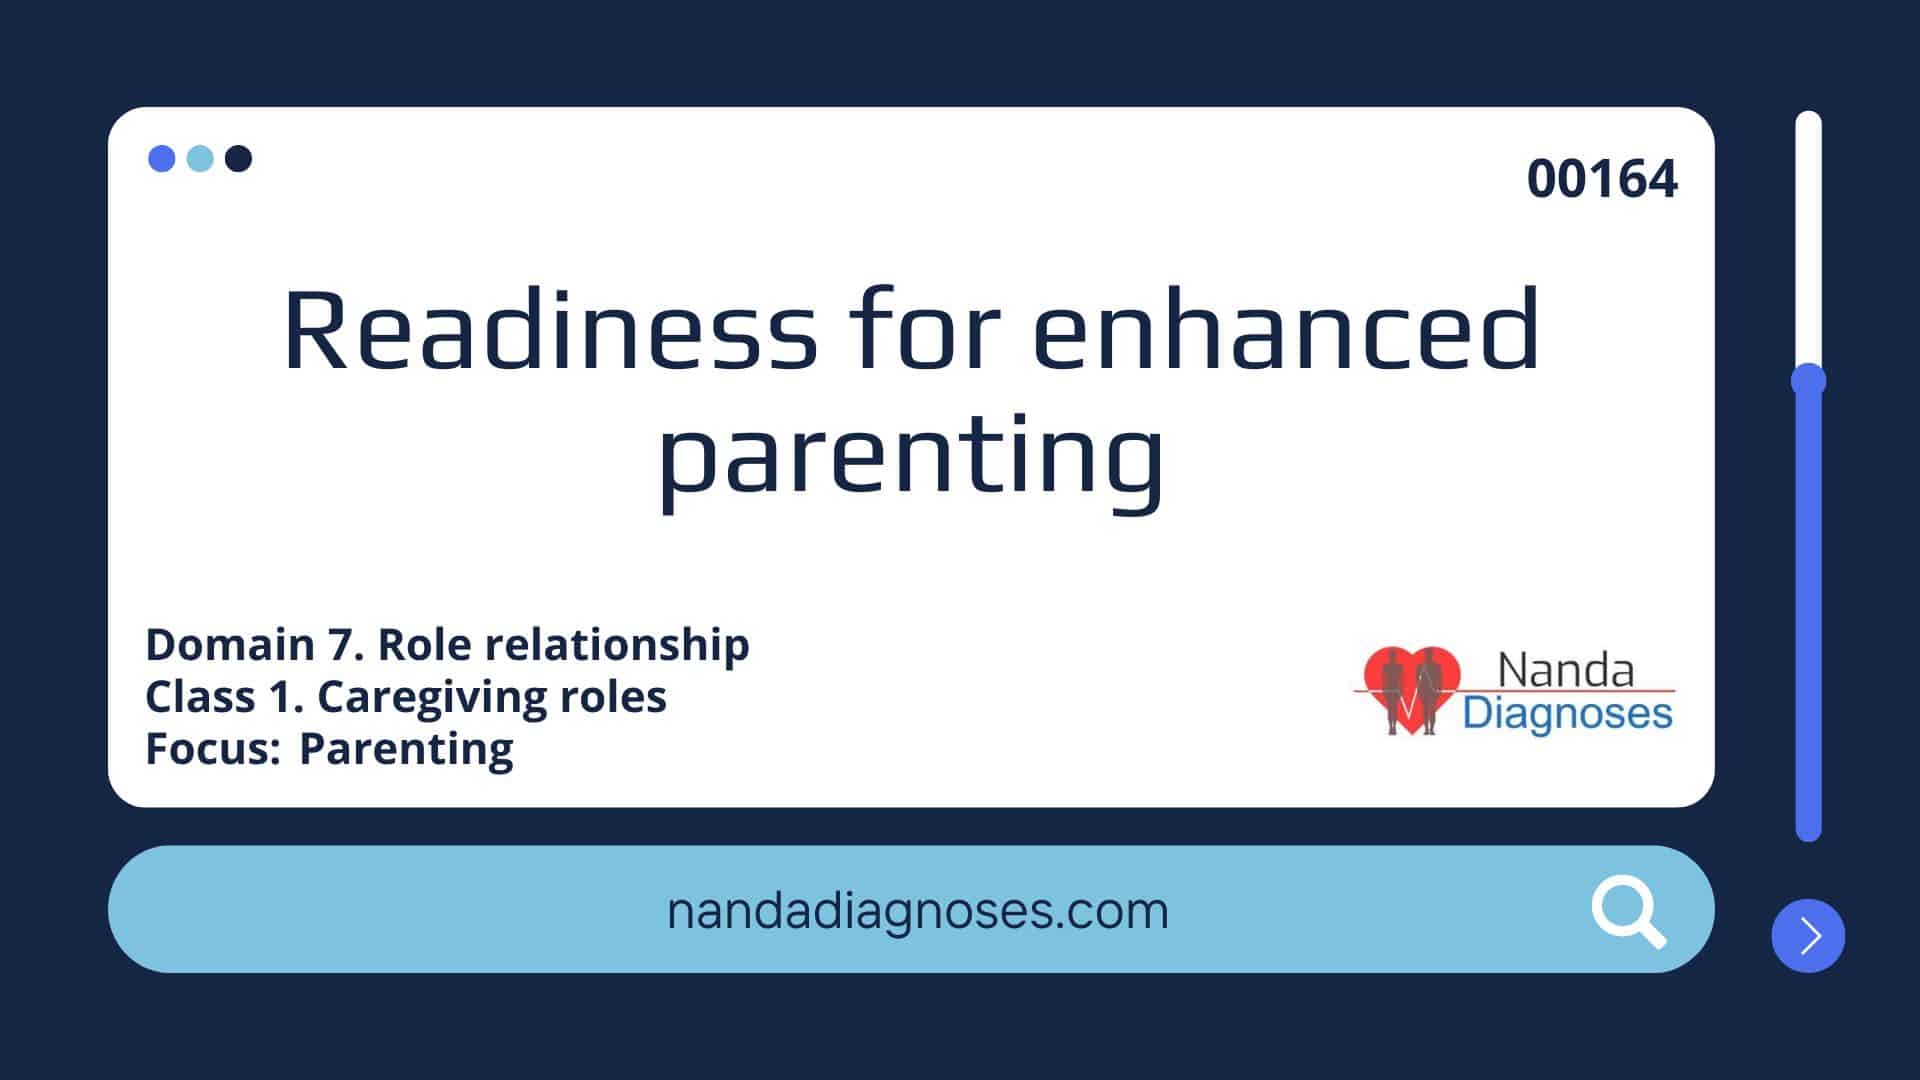 Nursing diagnosis Readiness for enhanced parenting